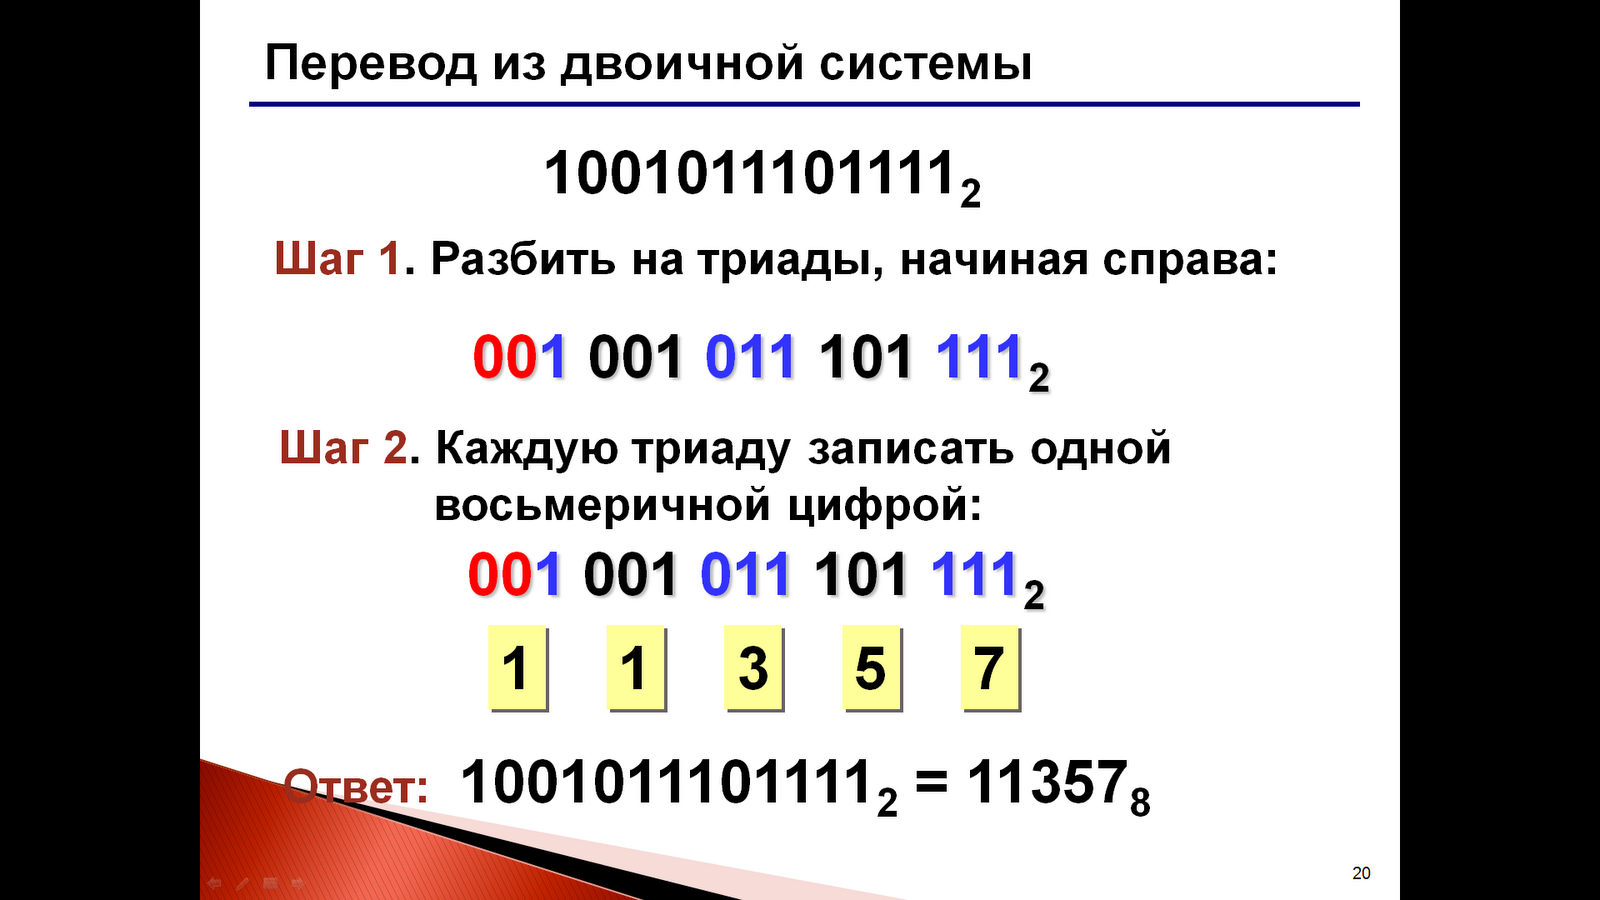 Алфавит 8 ричной системы. Шестнадцатиричная система счисления. Шестнадцатиричная строка. Соответствие десятичных и двоичных чисел. Операции 16 системы счисления.